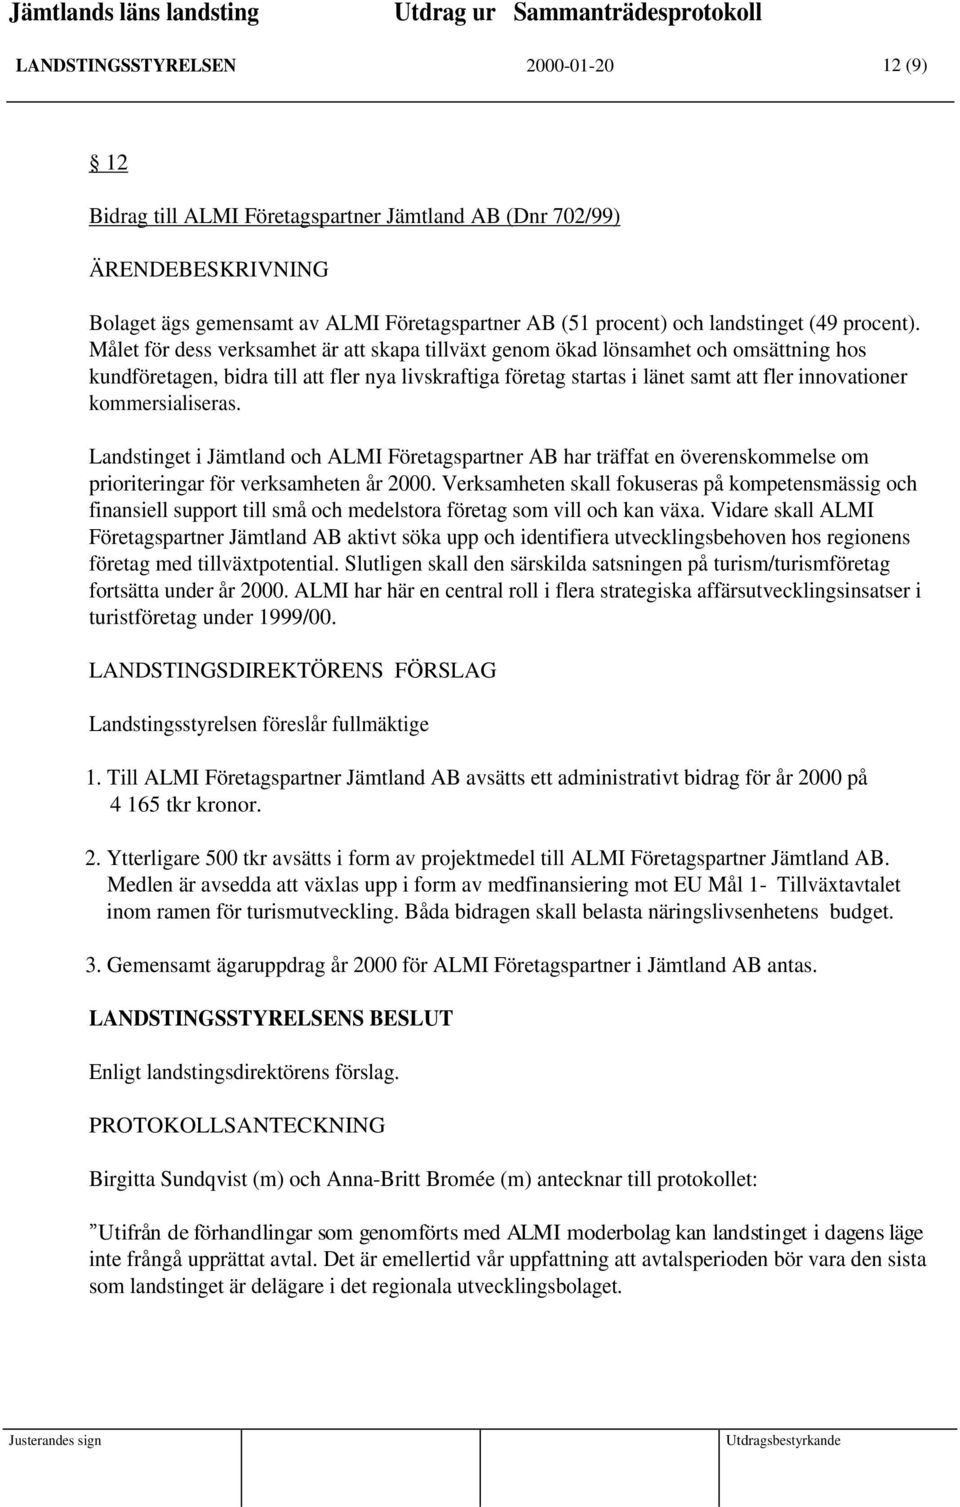 kommersialiseras. Landstinget i Jämtland och ALMI Företagspartner AB har träffat en överenskommelse om prioriteringar för verksamheten år 2000.